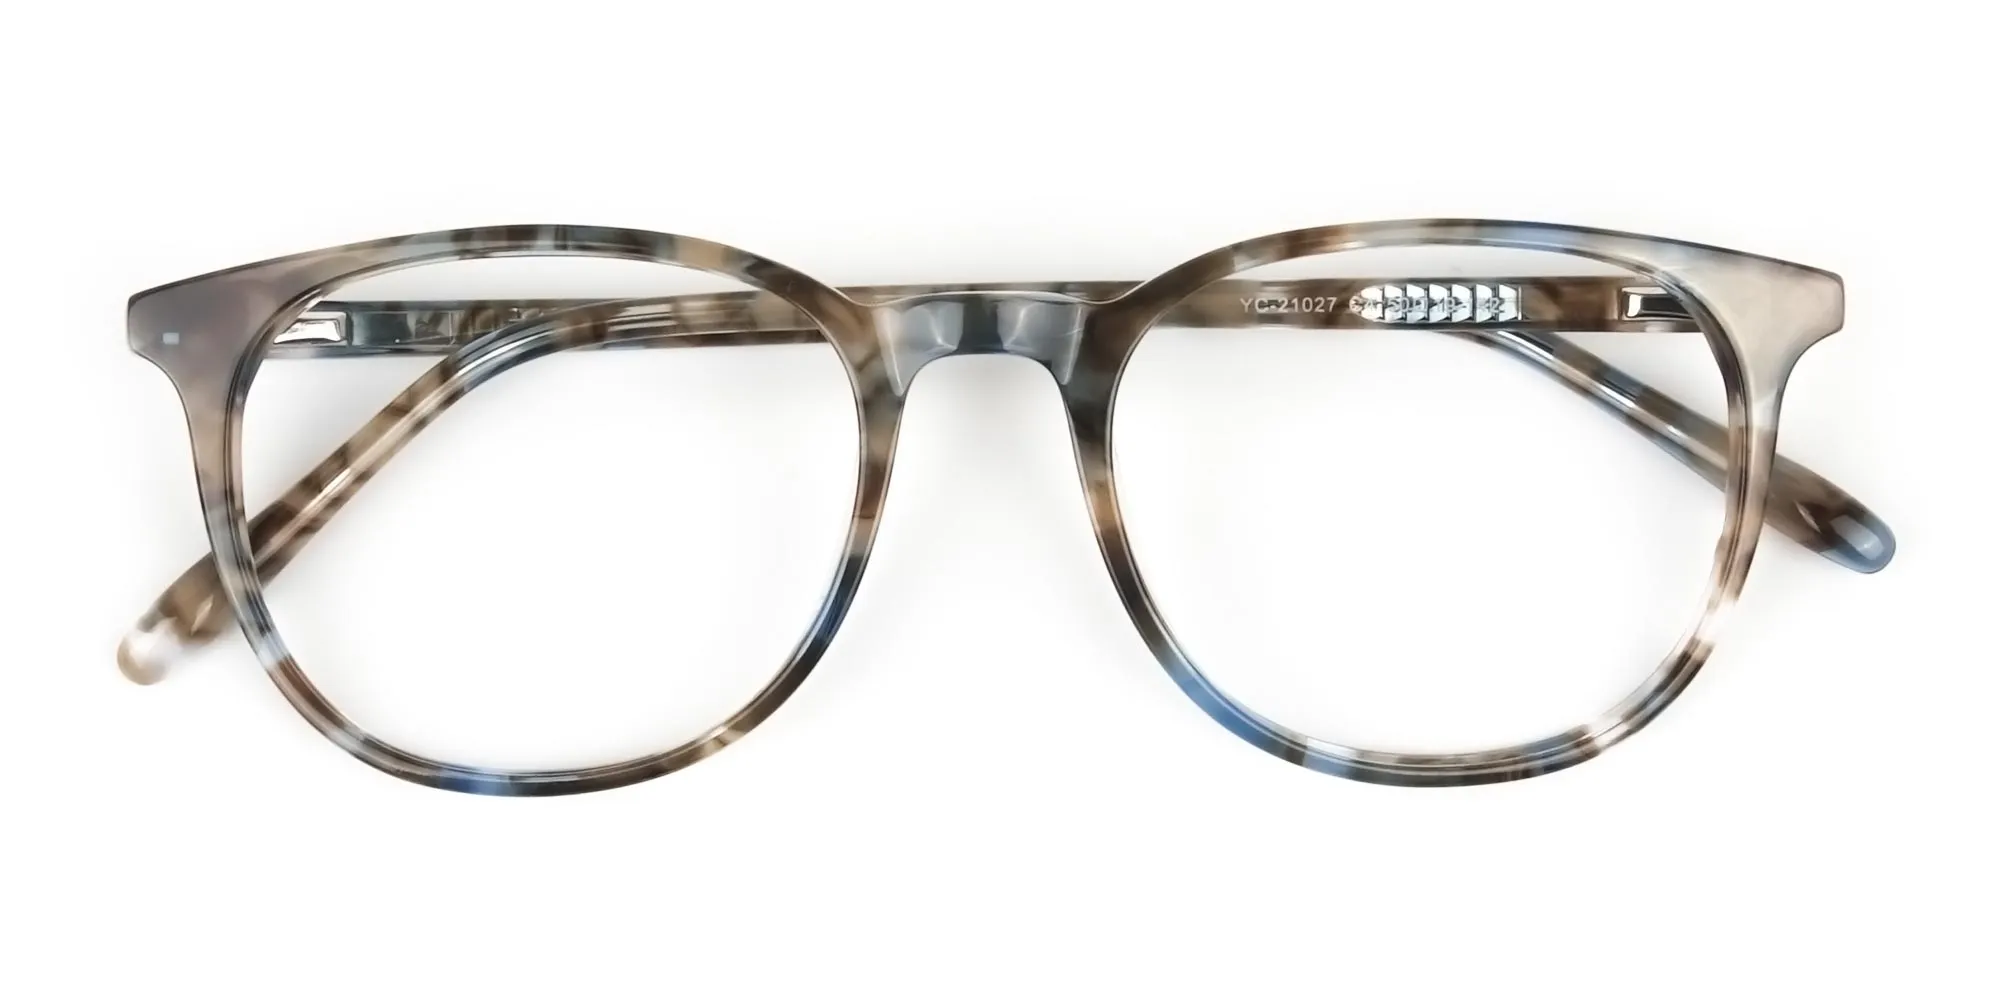 Tortoiseshell Brown and Blue Frame Glasses - 2